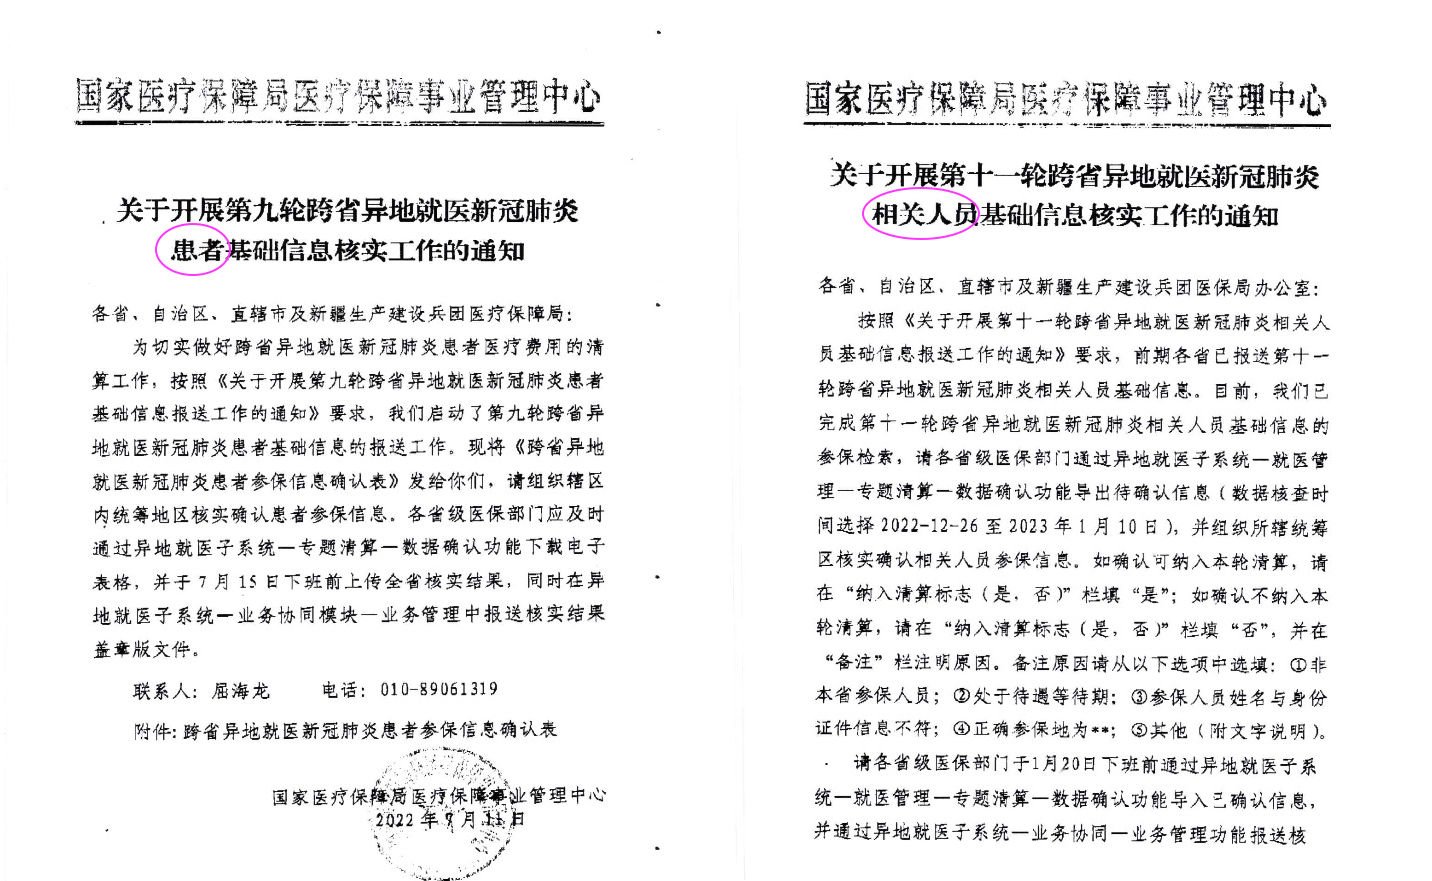 2022年7月及2023年1月，中共國家衛健委發文件標題中的「患者」一詞變為「相關人員」。（大紀元合成）